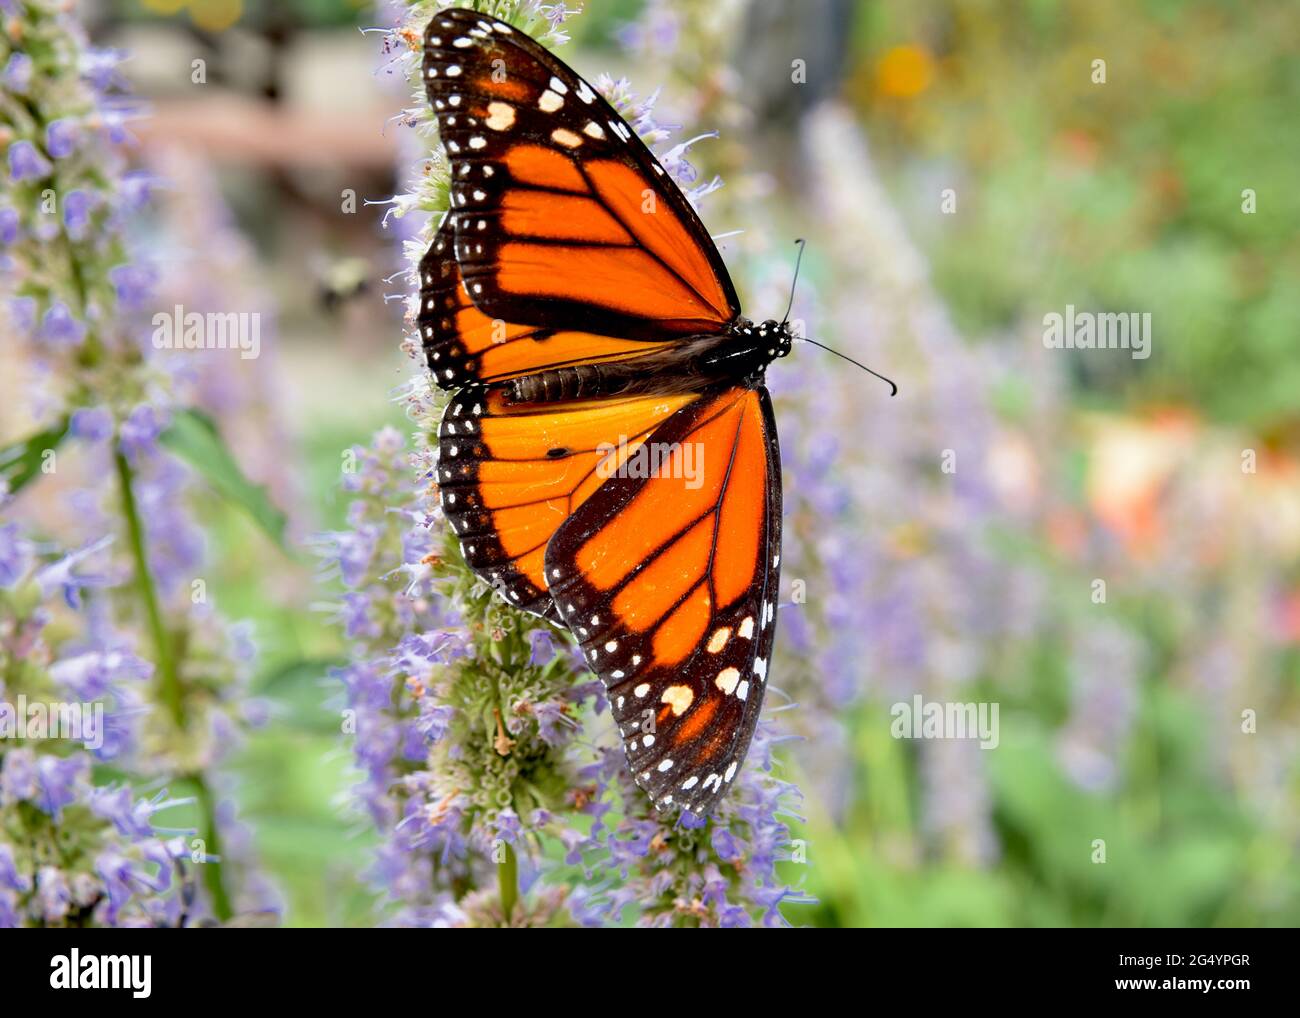 Nahaufnahme eines männlichen Monarchen-Schmetterlings (Danaus plexippus) mit ausgestreckten Flügeln auf den lila blühenden Ähren von Anis-Ysop (Agastache foeniculum.) Stockfoto